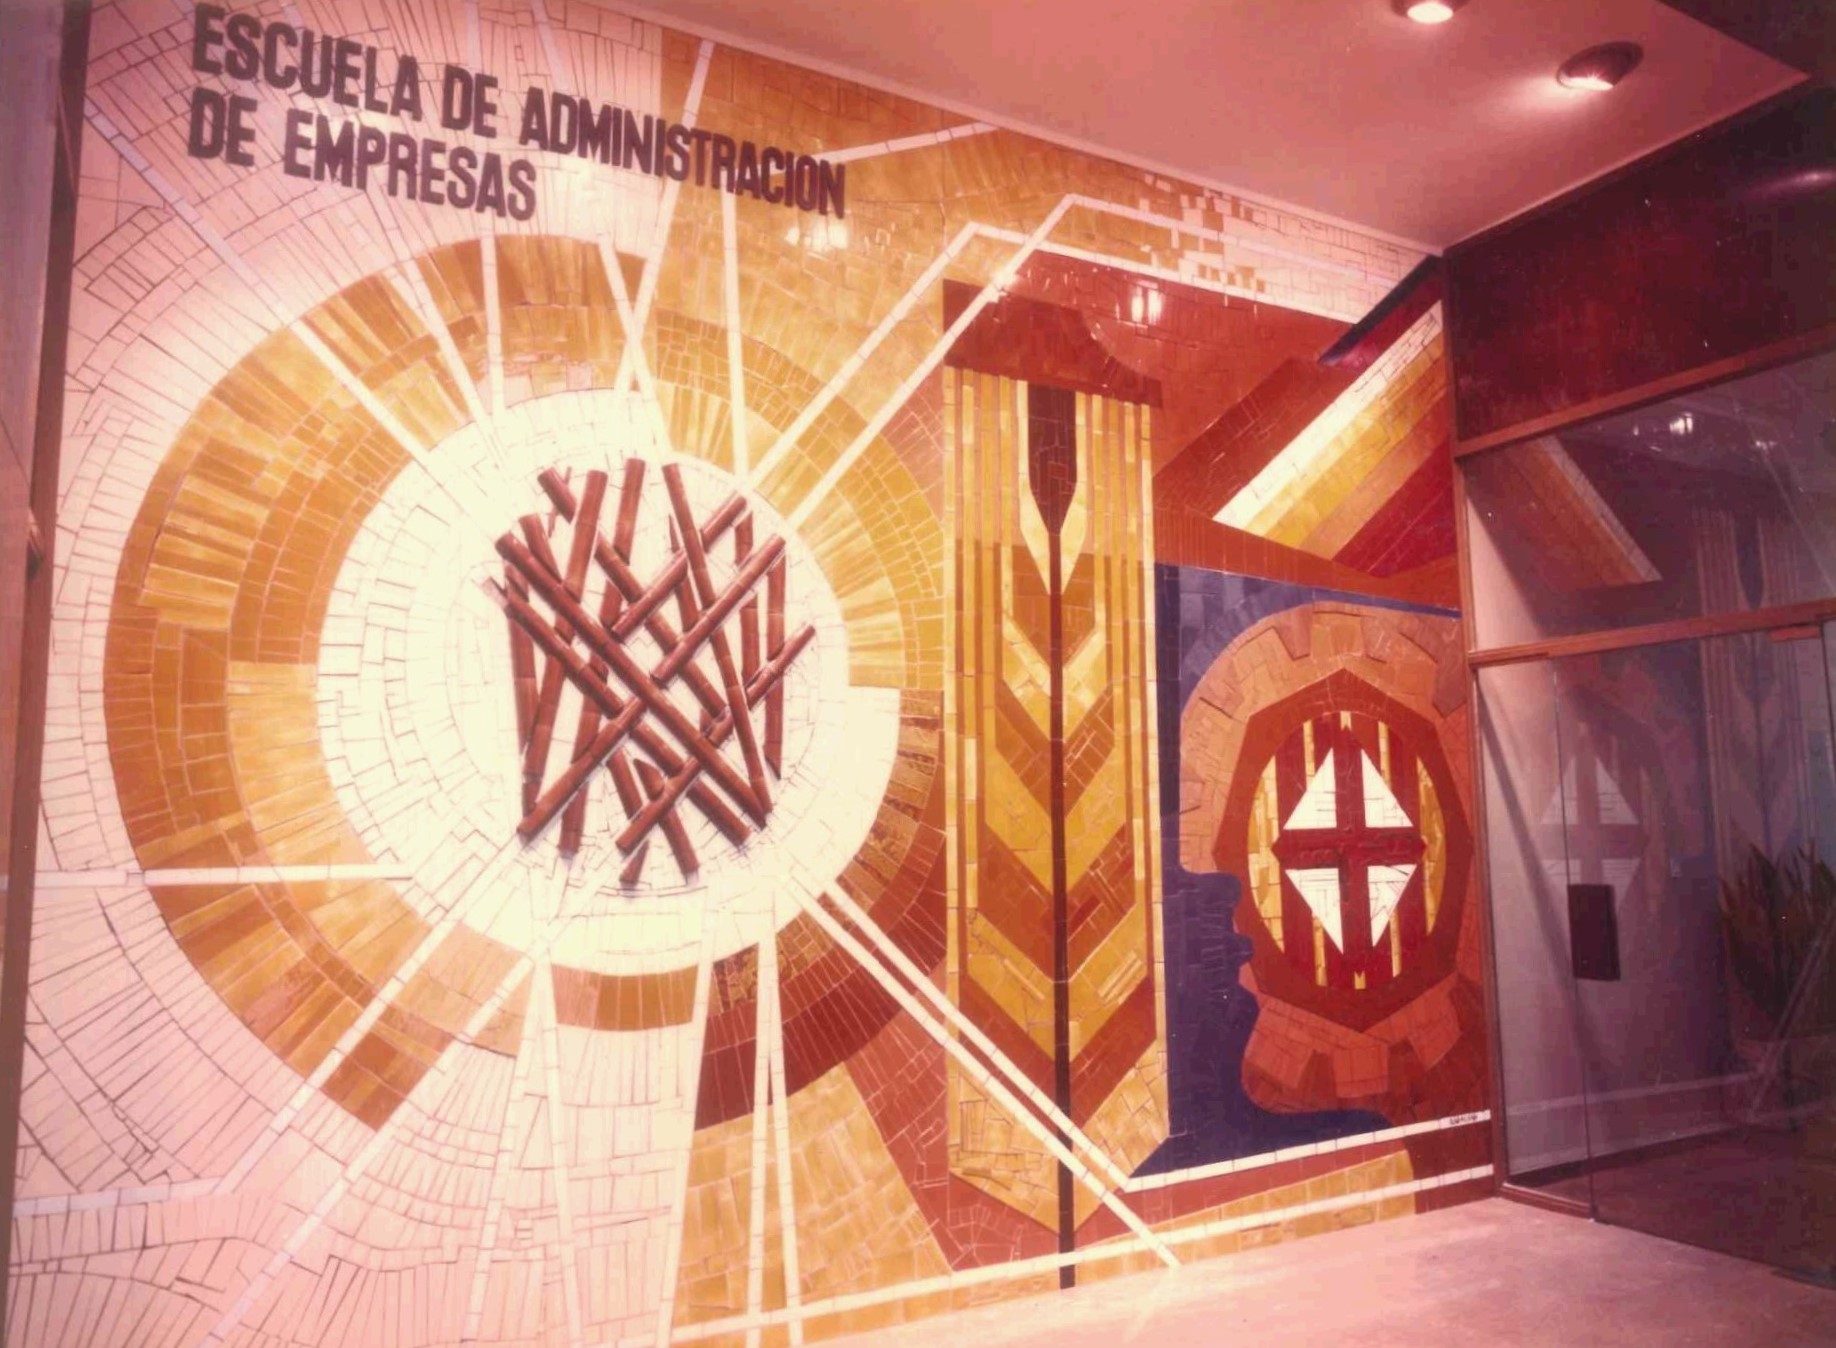 Inauguración de la nueva sede de la Escuela de Administración de Empresas (EAE) – 1976.